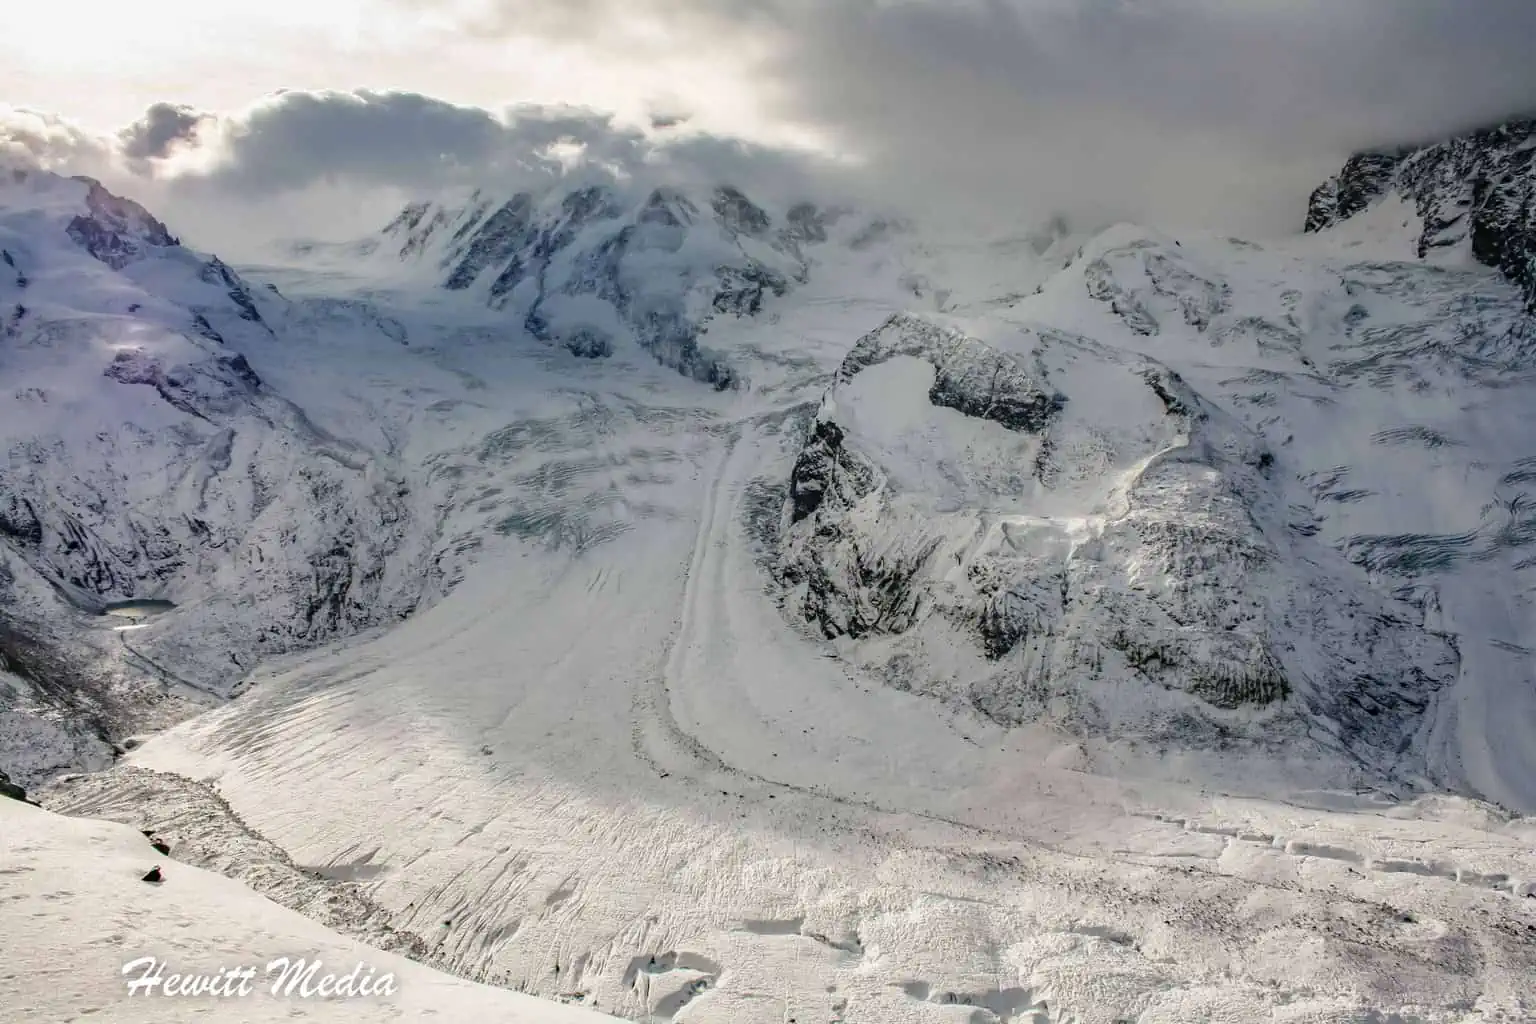 Gorner Glacier in Zermatt